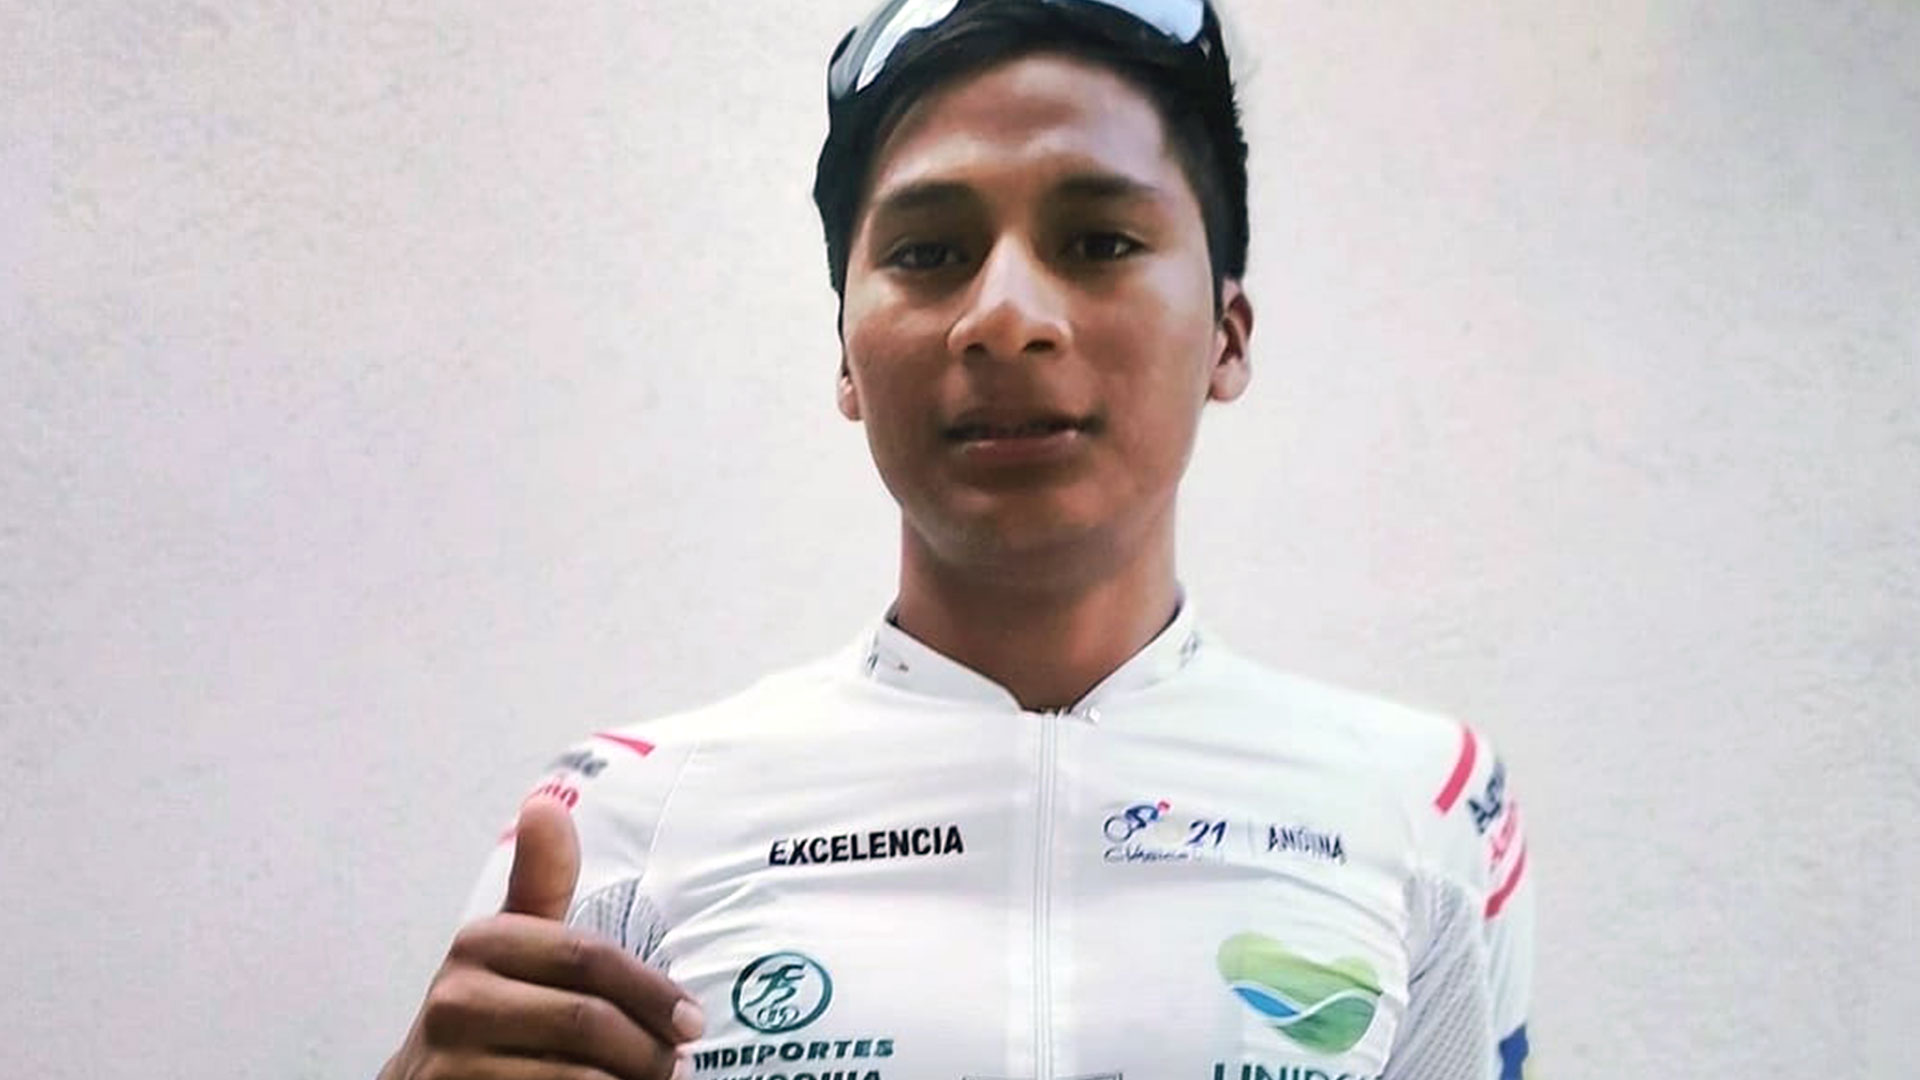 El ciclista nacional Mardoqueo Vásquez atabiado con el maillot de la excelencia, reconocimiento que obtuvo tras participar en la 60 edición del #ClásicoRCN (Foto Prensa Libre: Federación de Ciclismo Twitter)